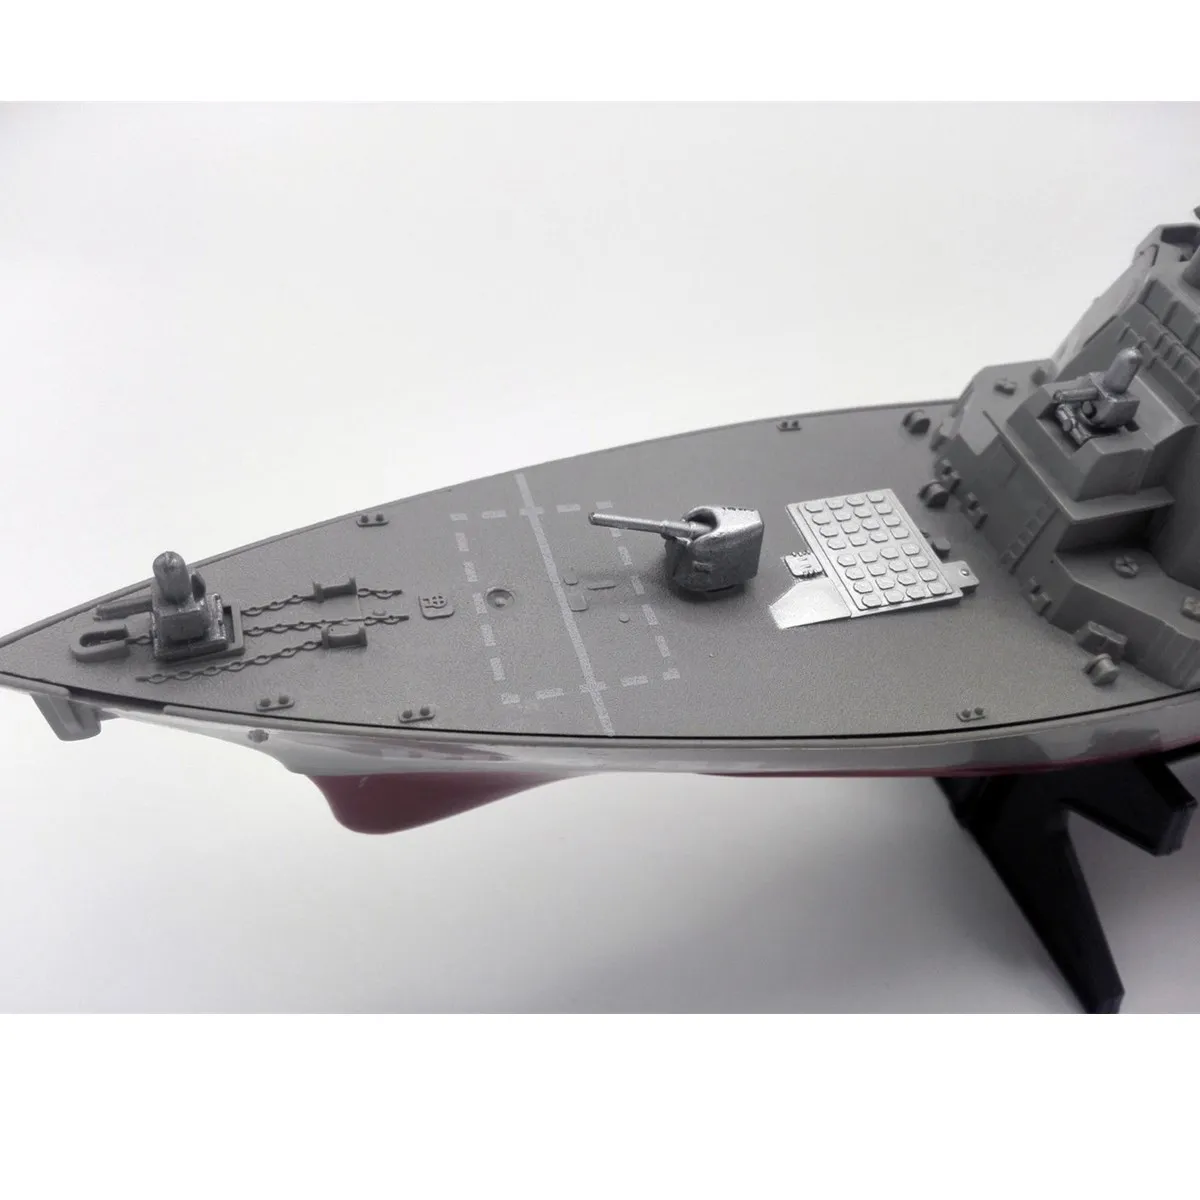 Hær Guided Missile Destroyer Skib Model Statisk Legetøj med Display Stå Krigsskib Model DIY Pædagogisk Legetøj Hobbyer Børn Gave